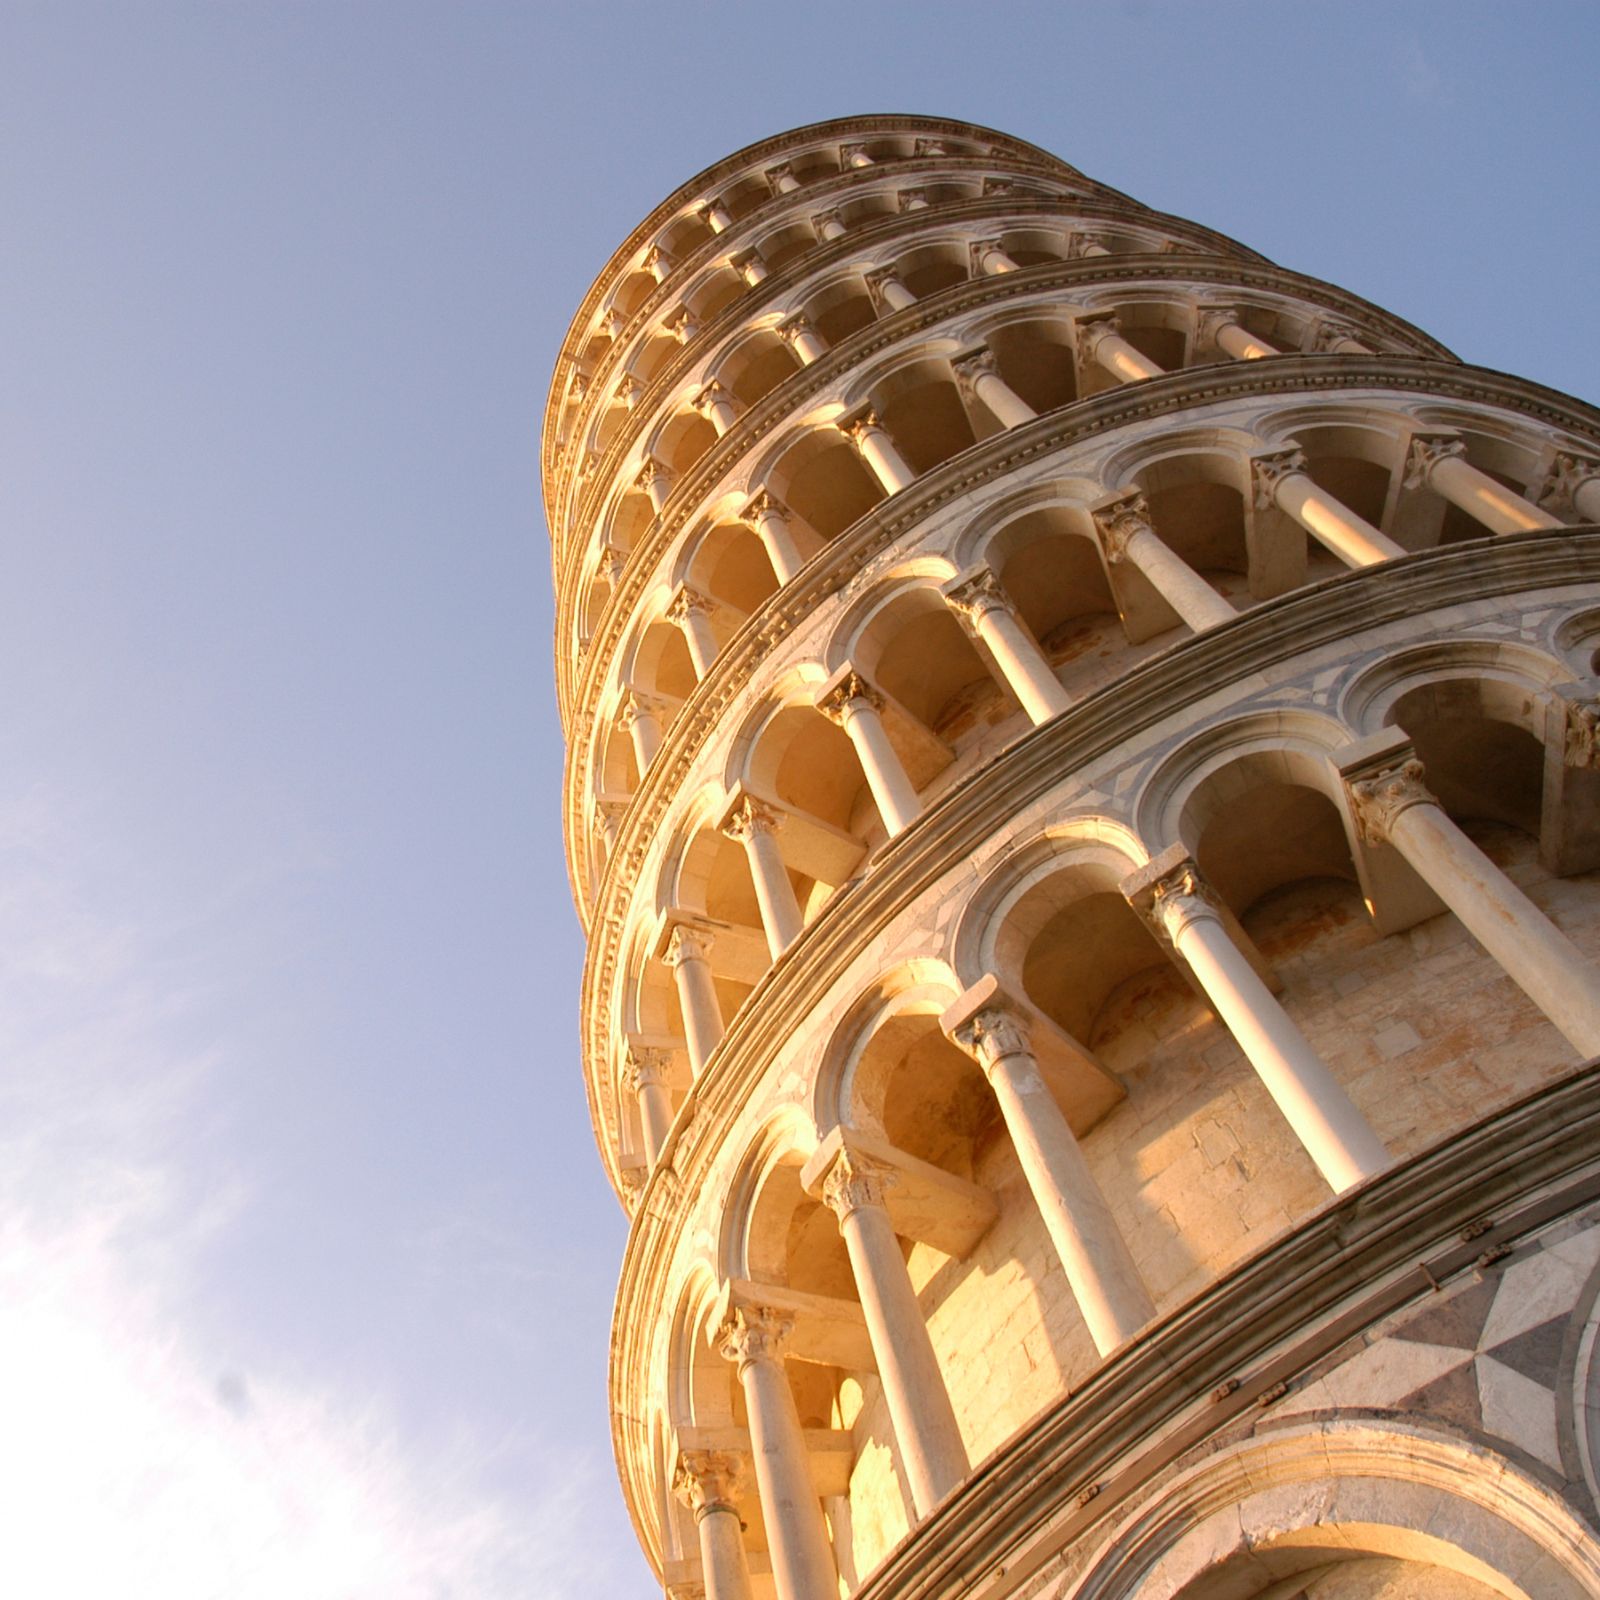 La torre di Pisa in Piazza dei Miracoli